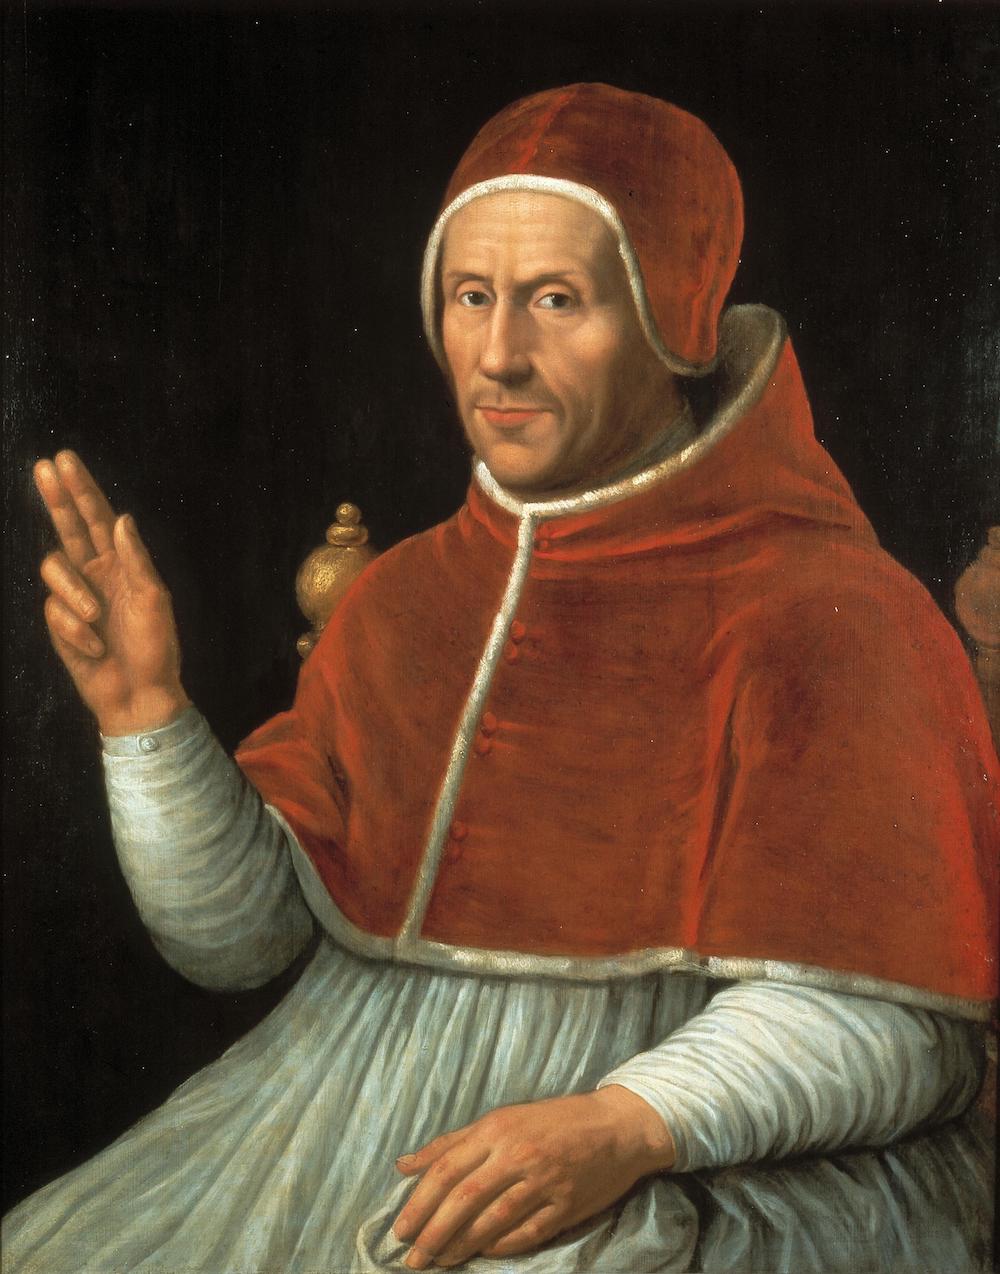 Paus Adrianus op kopie naar schilderij van Jan van Scorel Centraal Museum